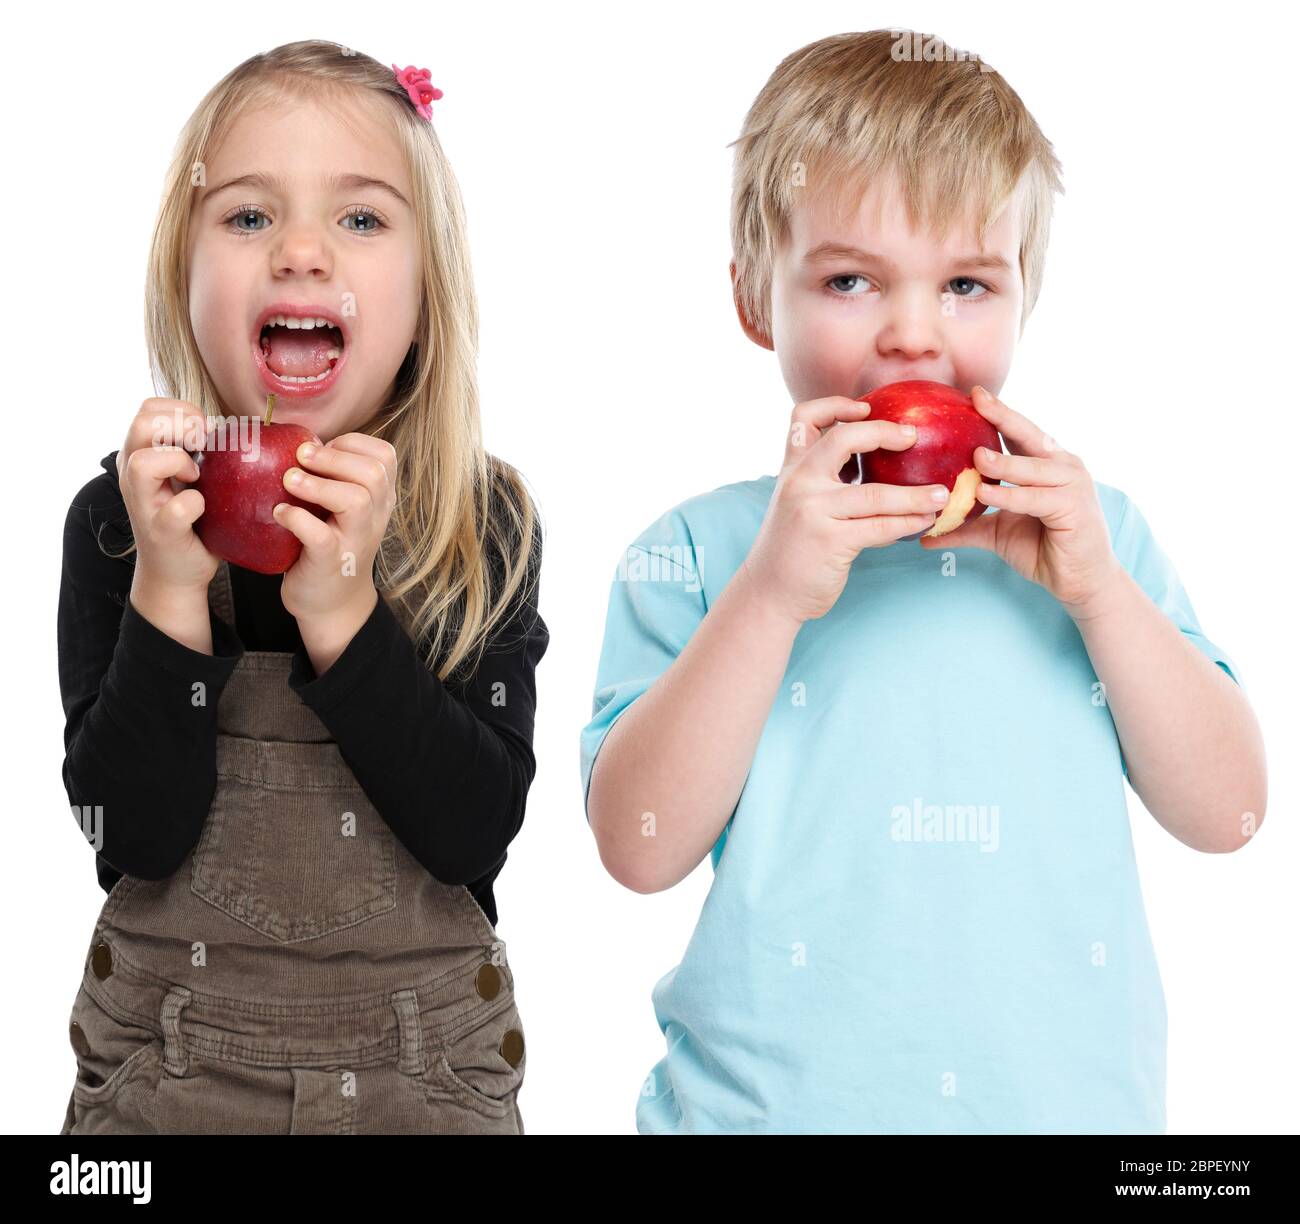 Kinder Apfel Obst Früchte gesunde Ernährung isoliert Herbst essen  Freisteller freigestellt vor einem weissen Hintergrund Photo Stock - Alamy